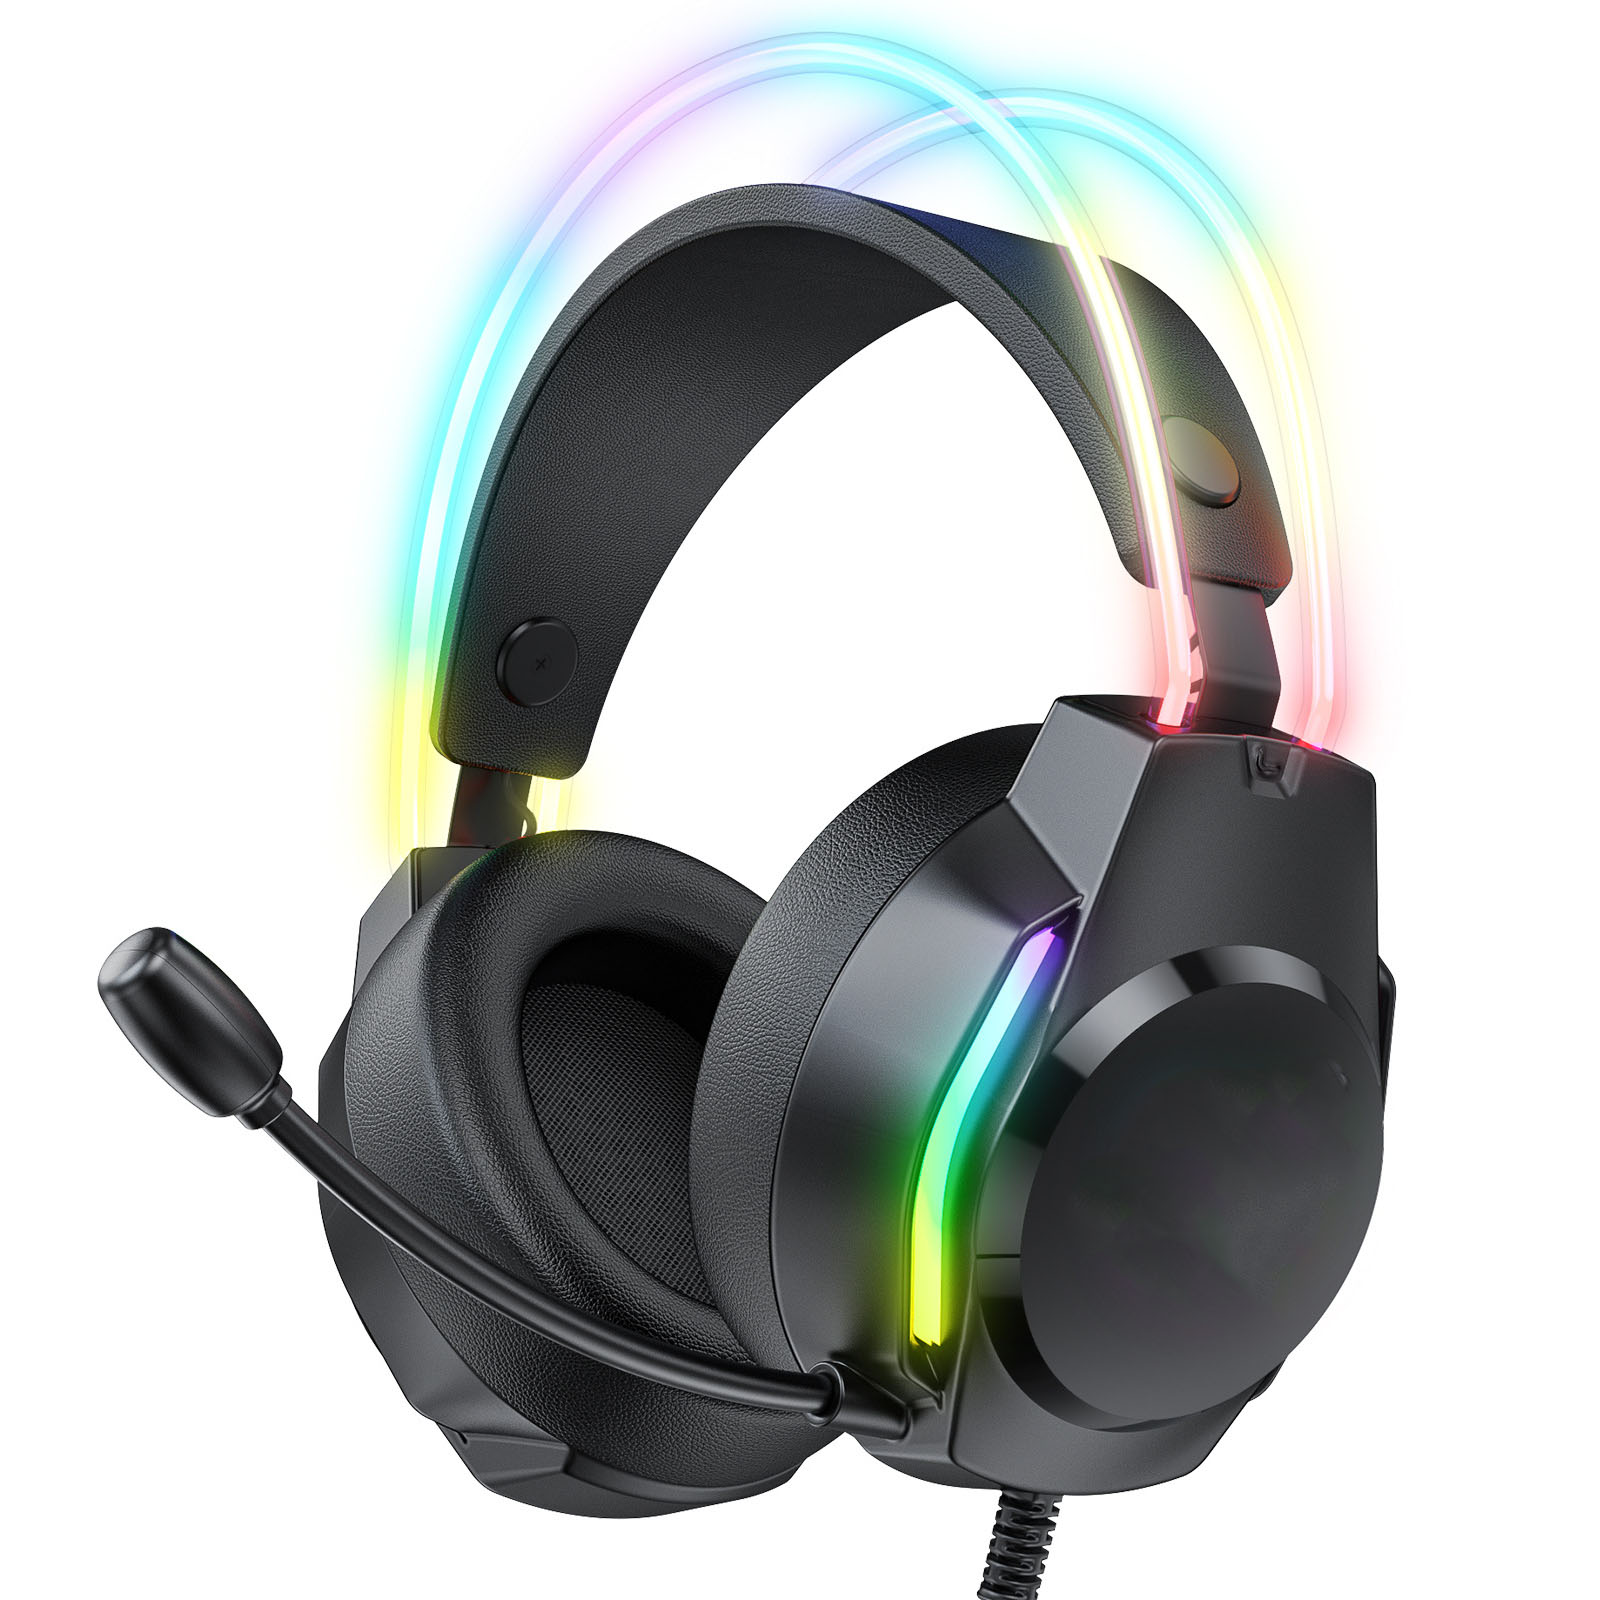 Sound BRIGHTAKE Komfort, Surround Headset, Geräuschunterdrückung, Kopfhörer Over-ear Mehrfachkompatibilität, Schwarz RGB, Gaming